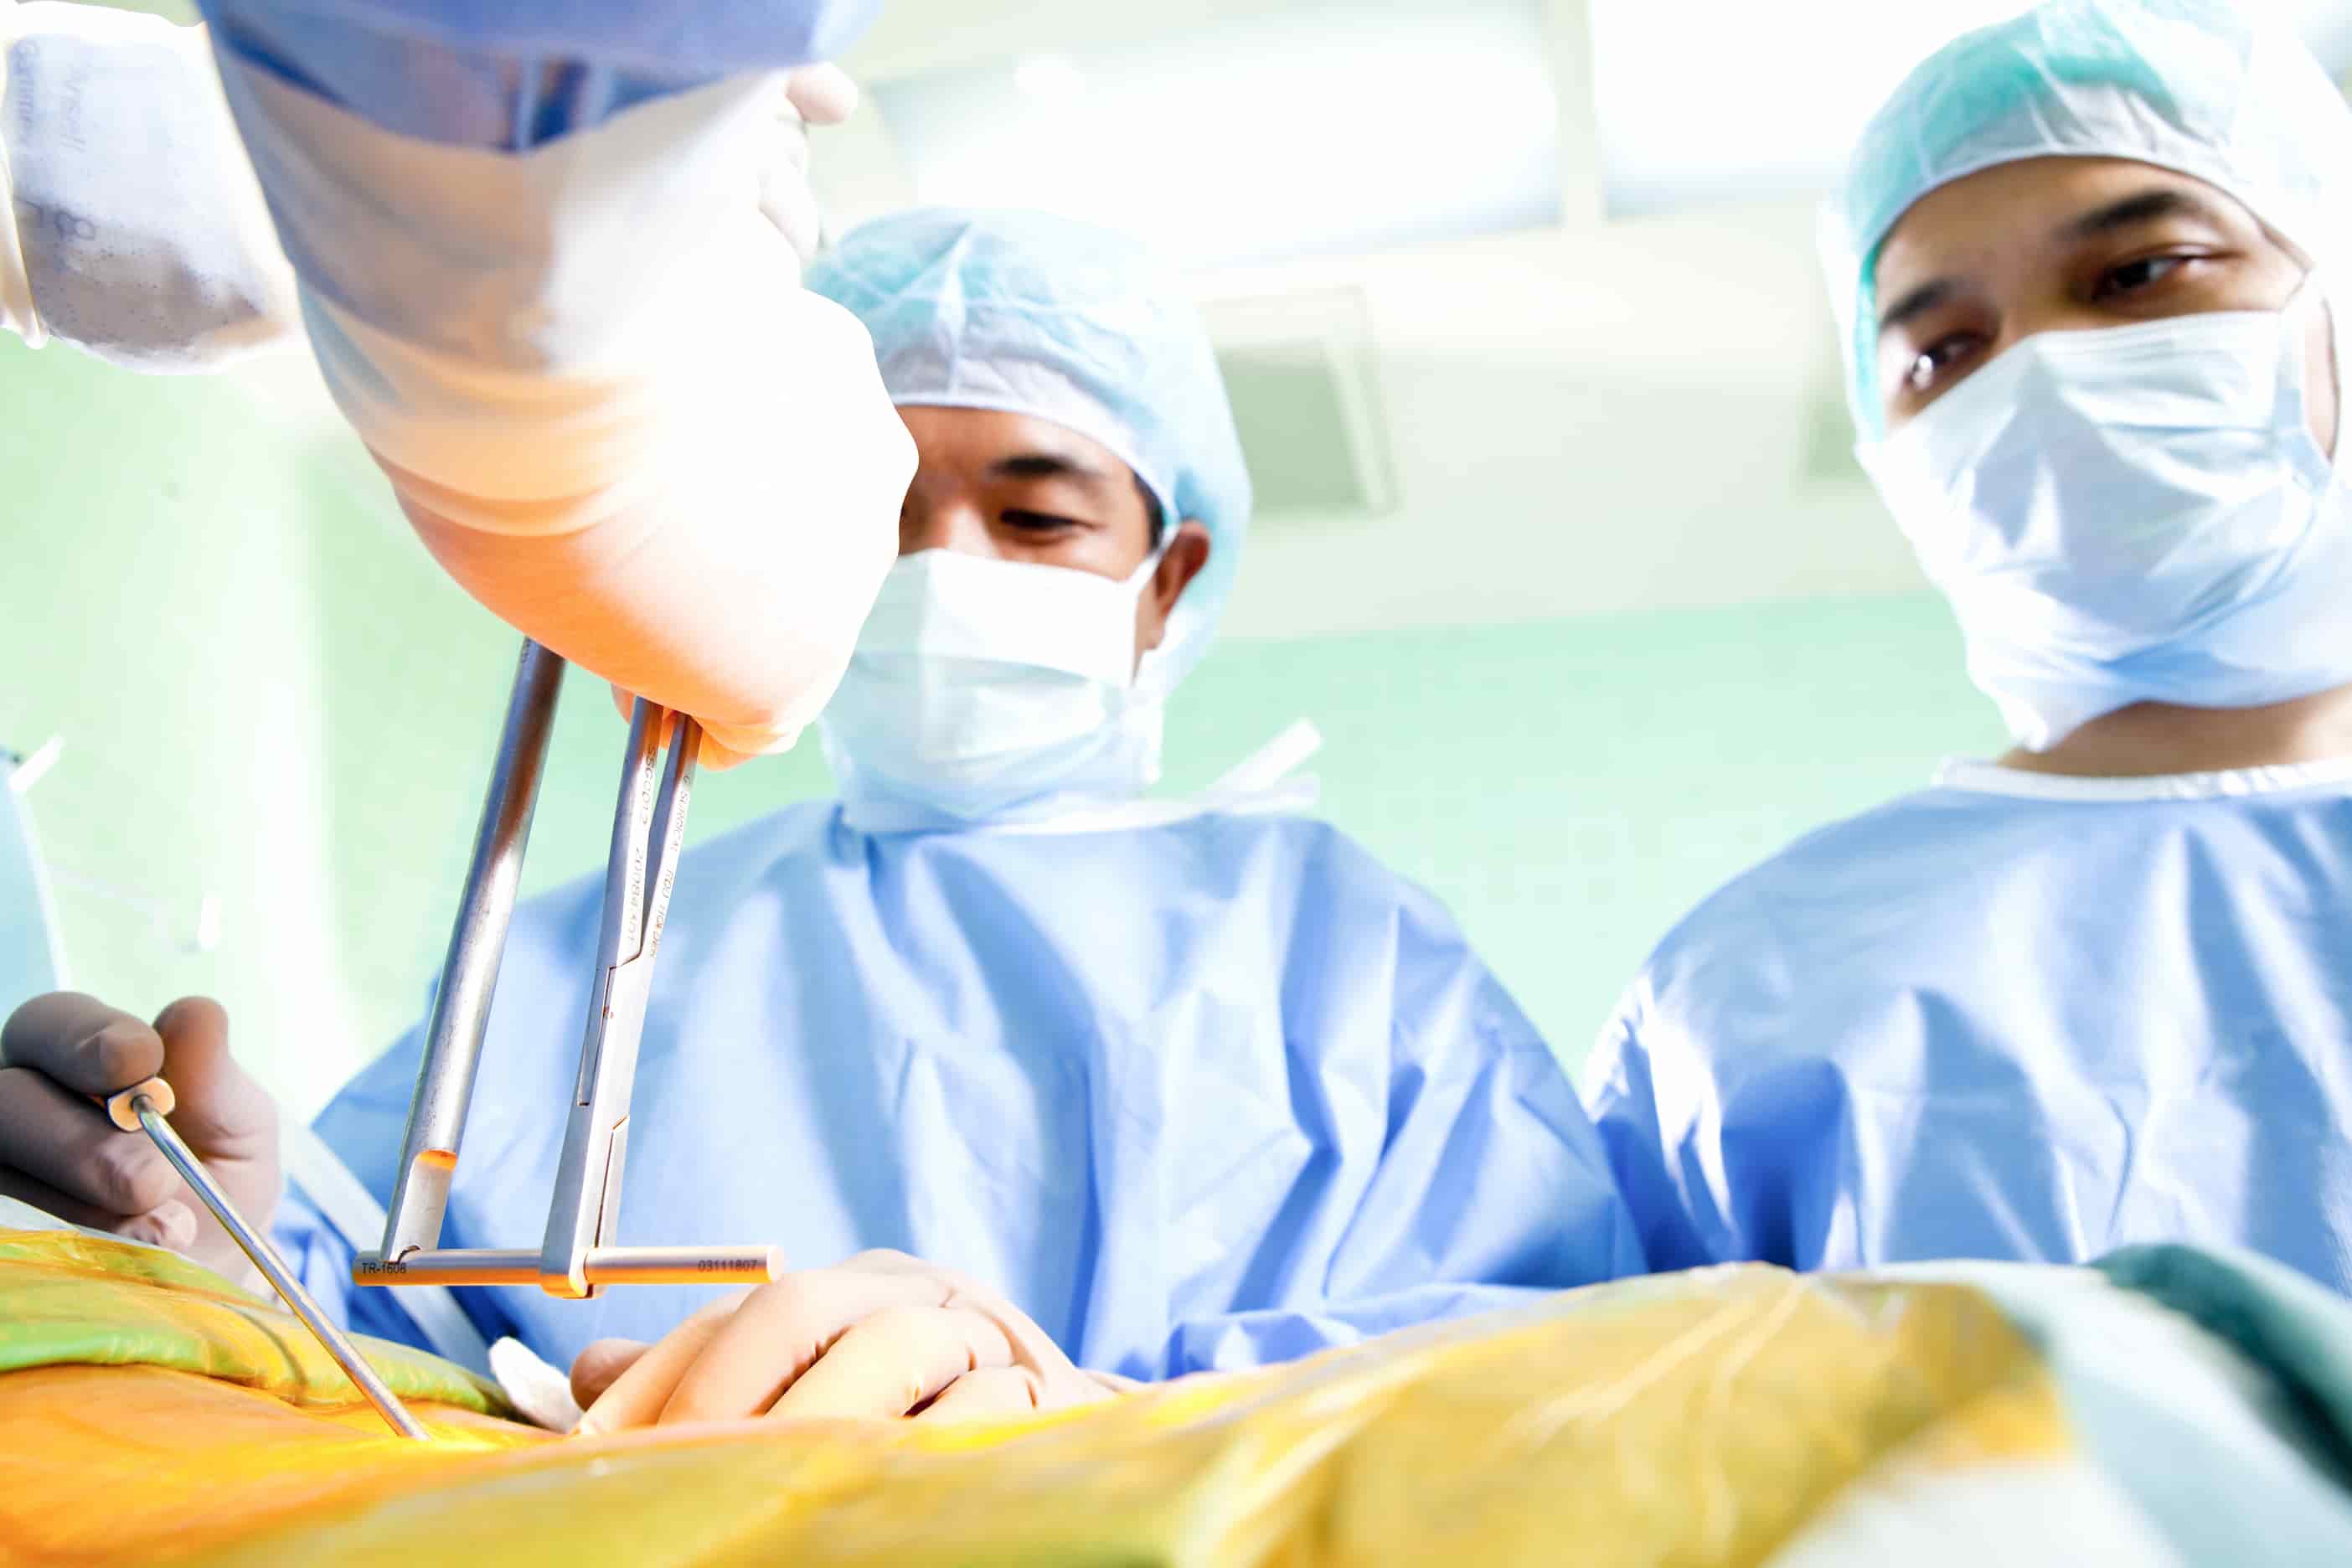 Turkiye laminectomy surgery